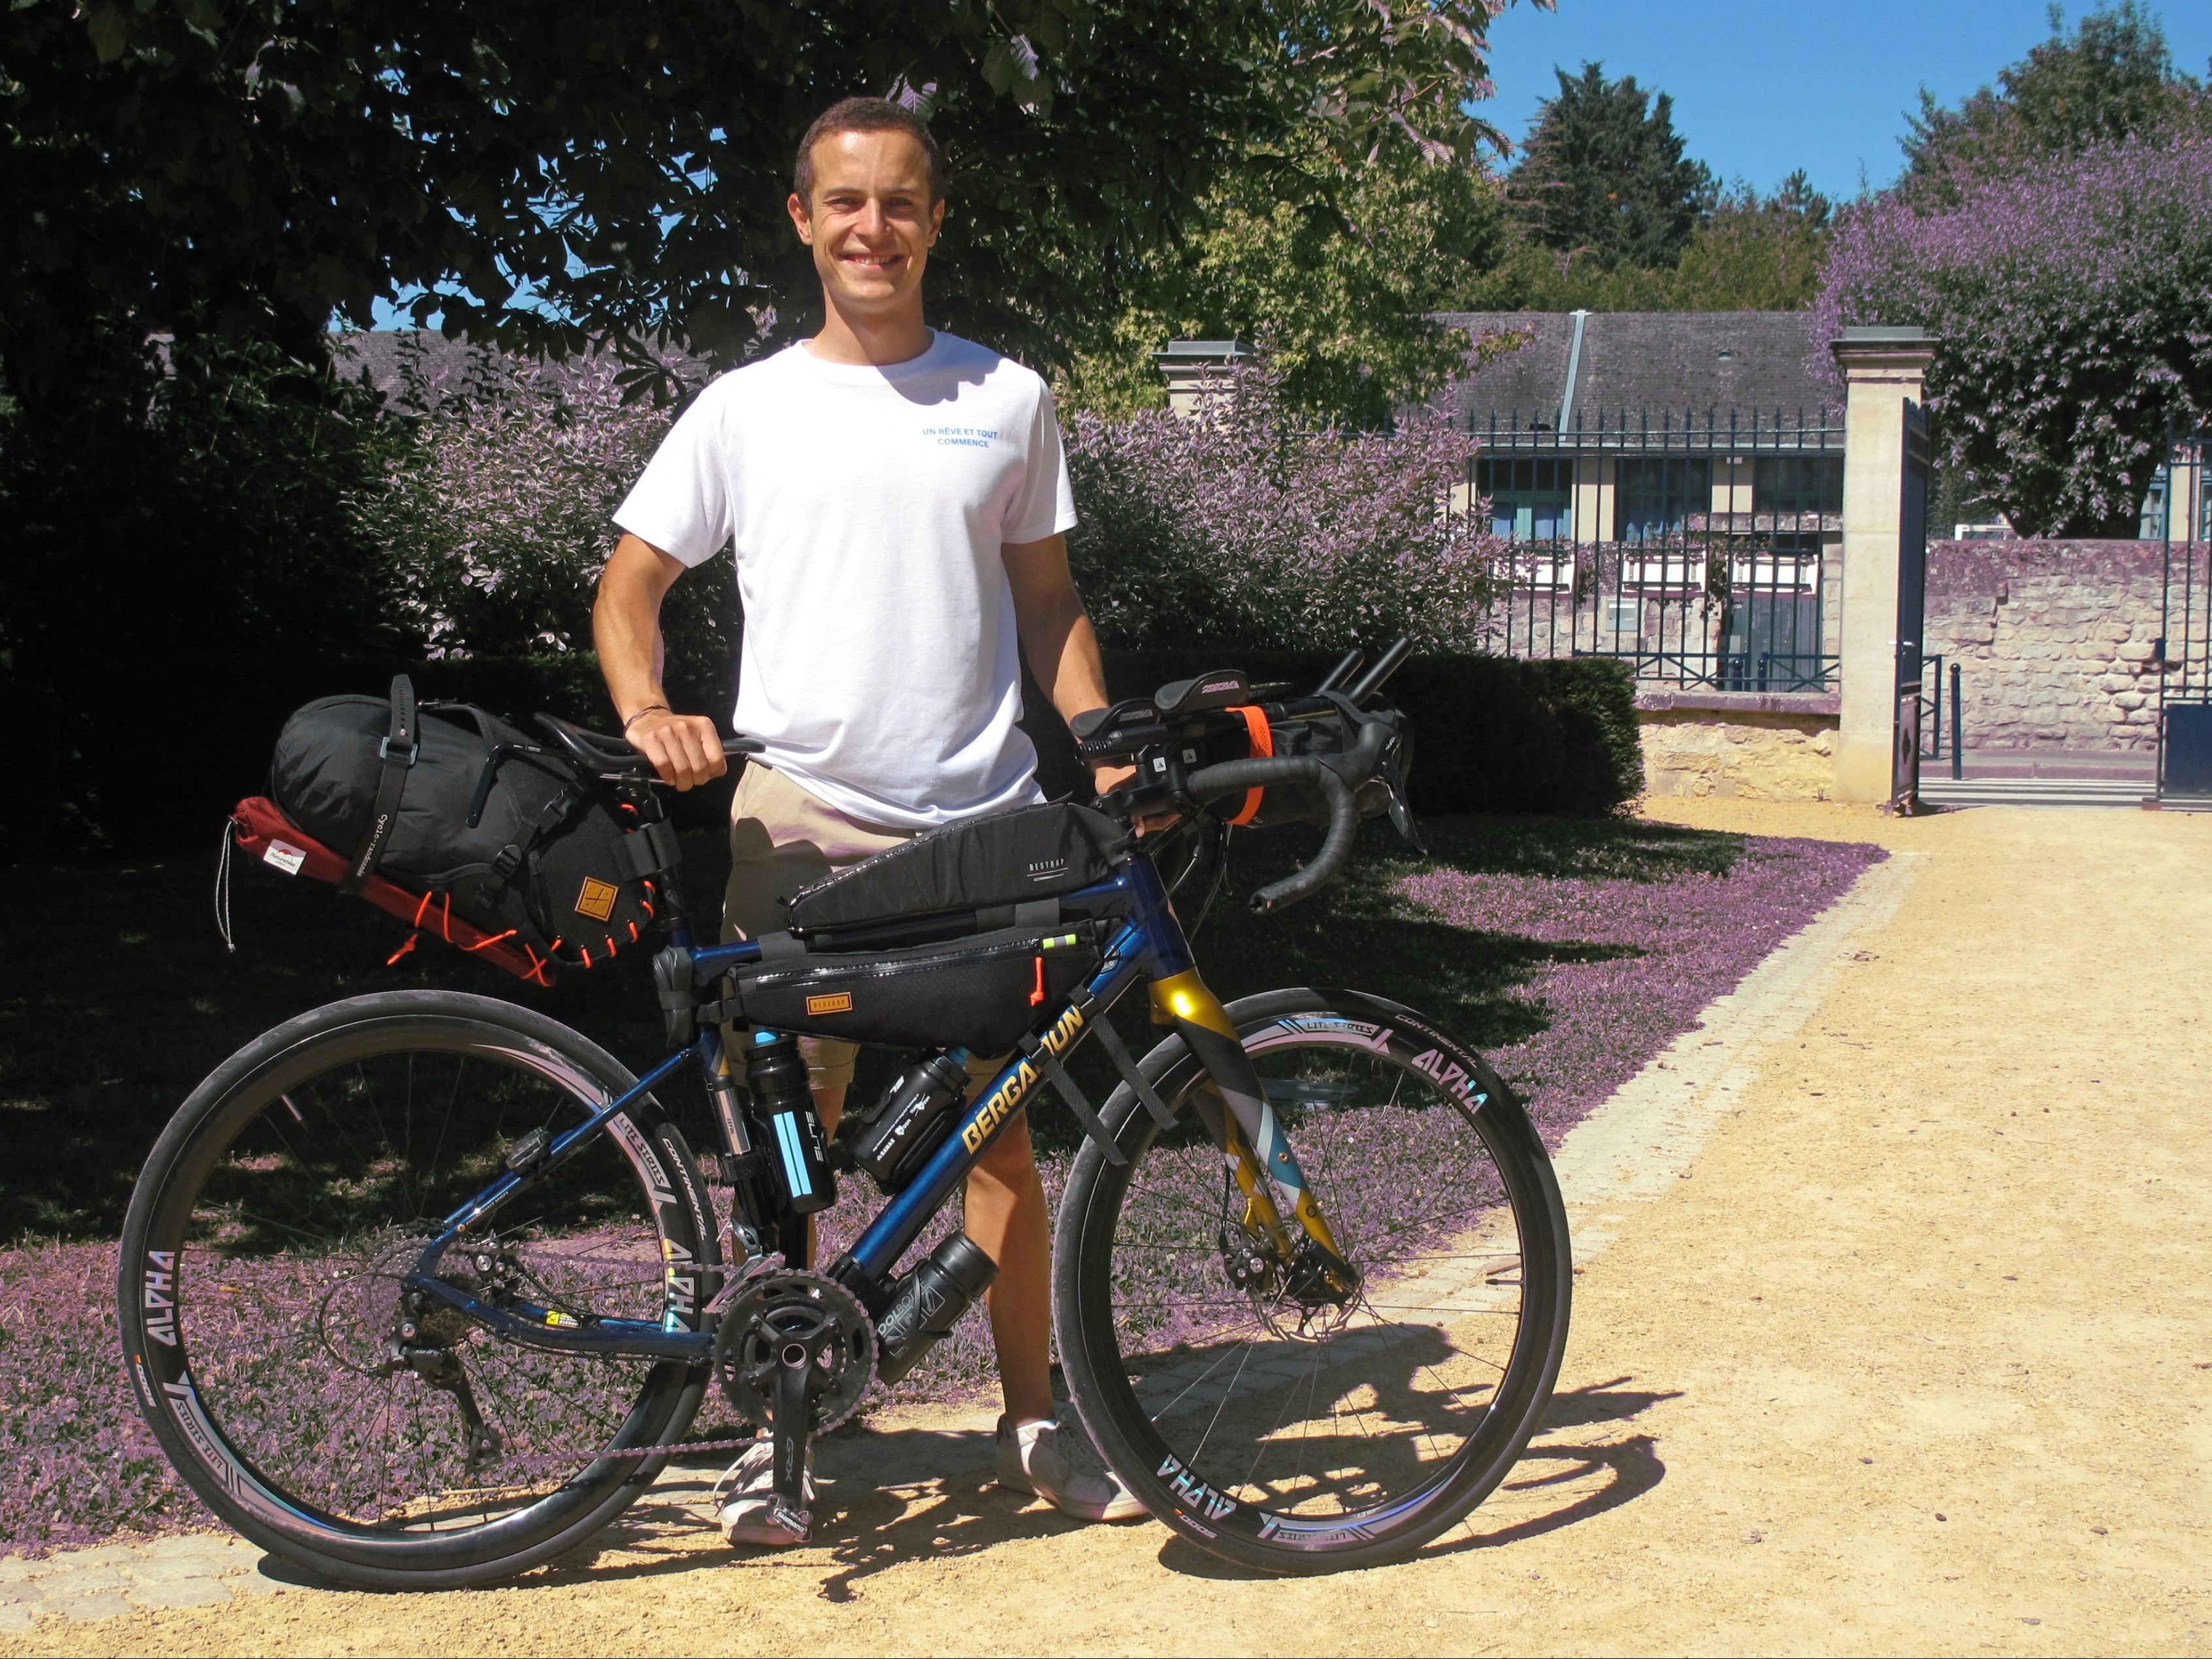 Gouvieux (Oise), le vendredi 8 juillet. Avec son vélo, Hugo part pour rejoindre la Norvège : un périple de 4000km. LP/ Maëlle Roudaut